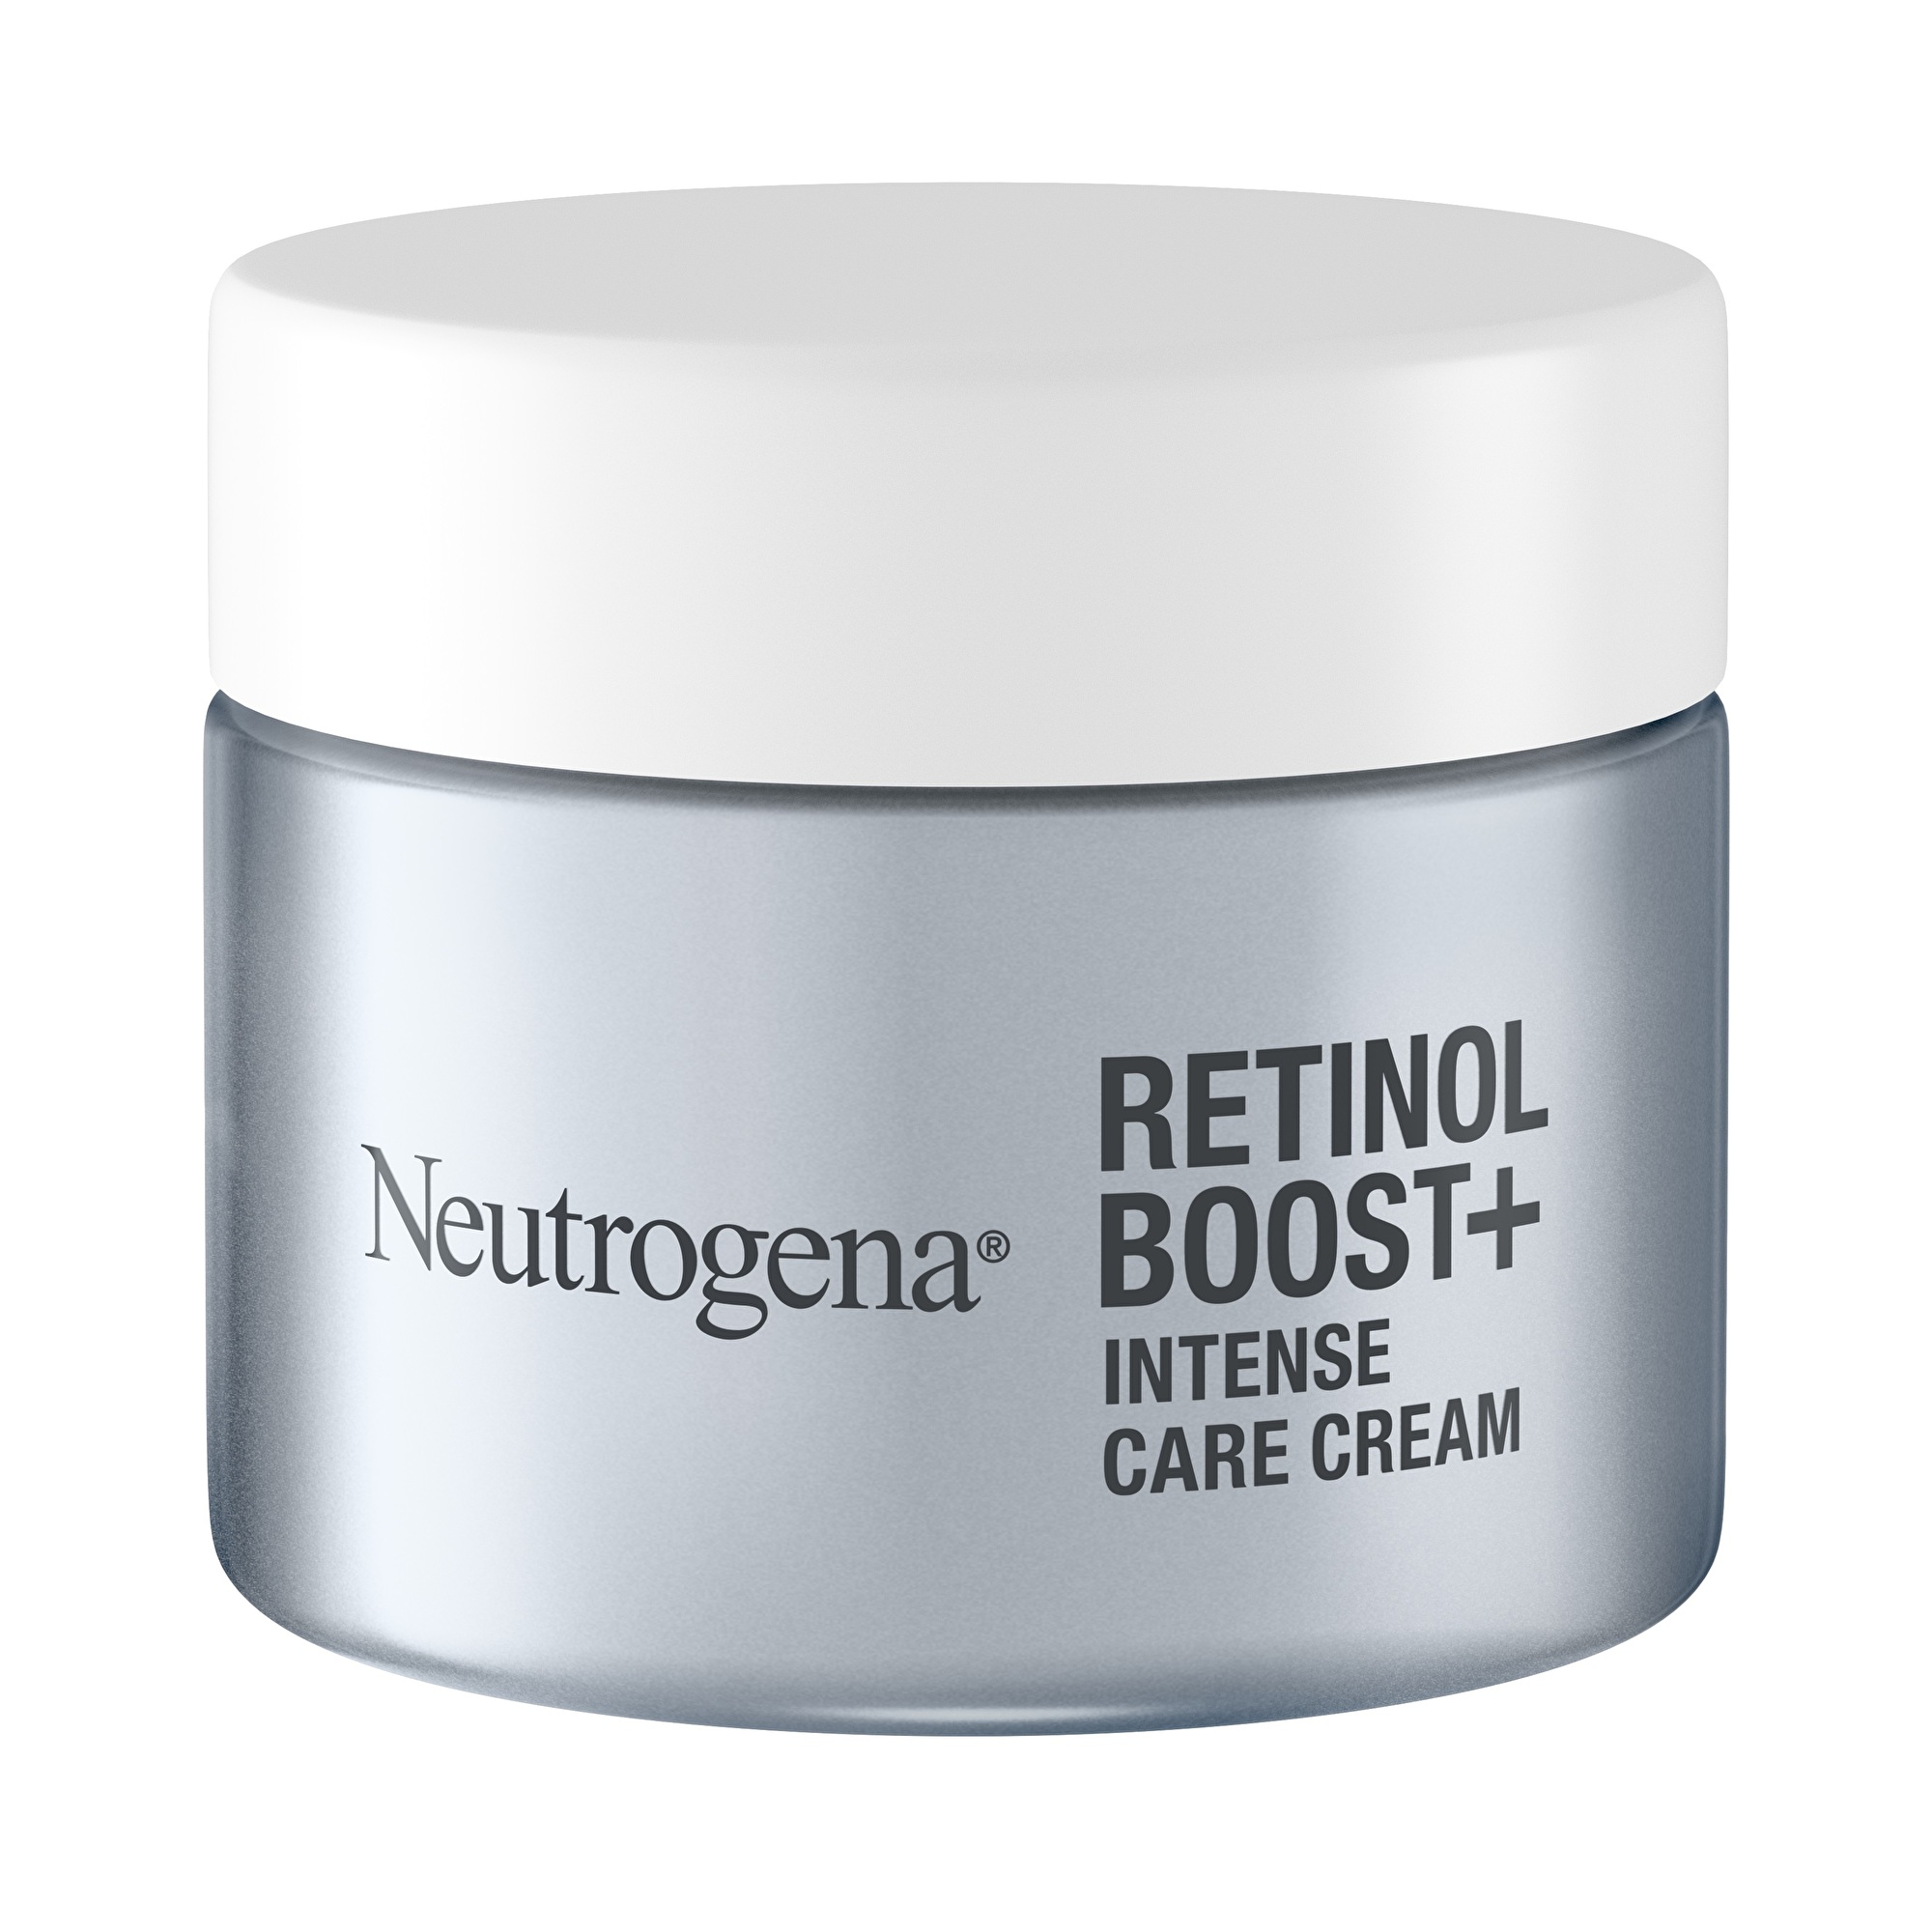 Neutrogena Intenzivní pleťová péče Retinol Boost+ (Intense Care Cream) 50 ml